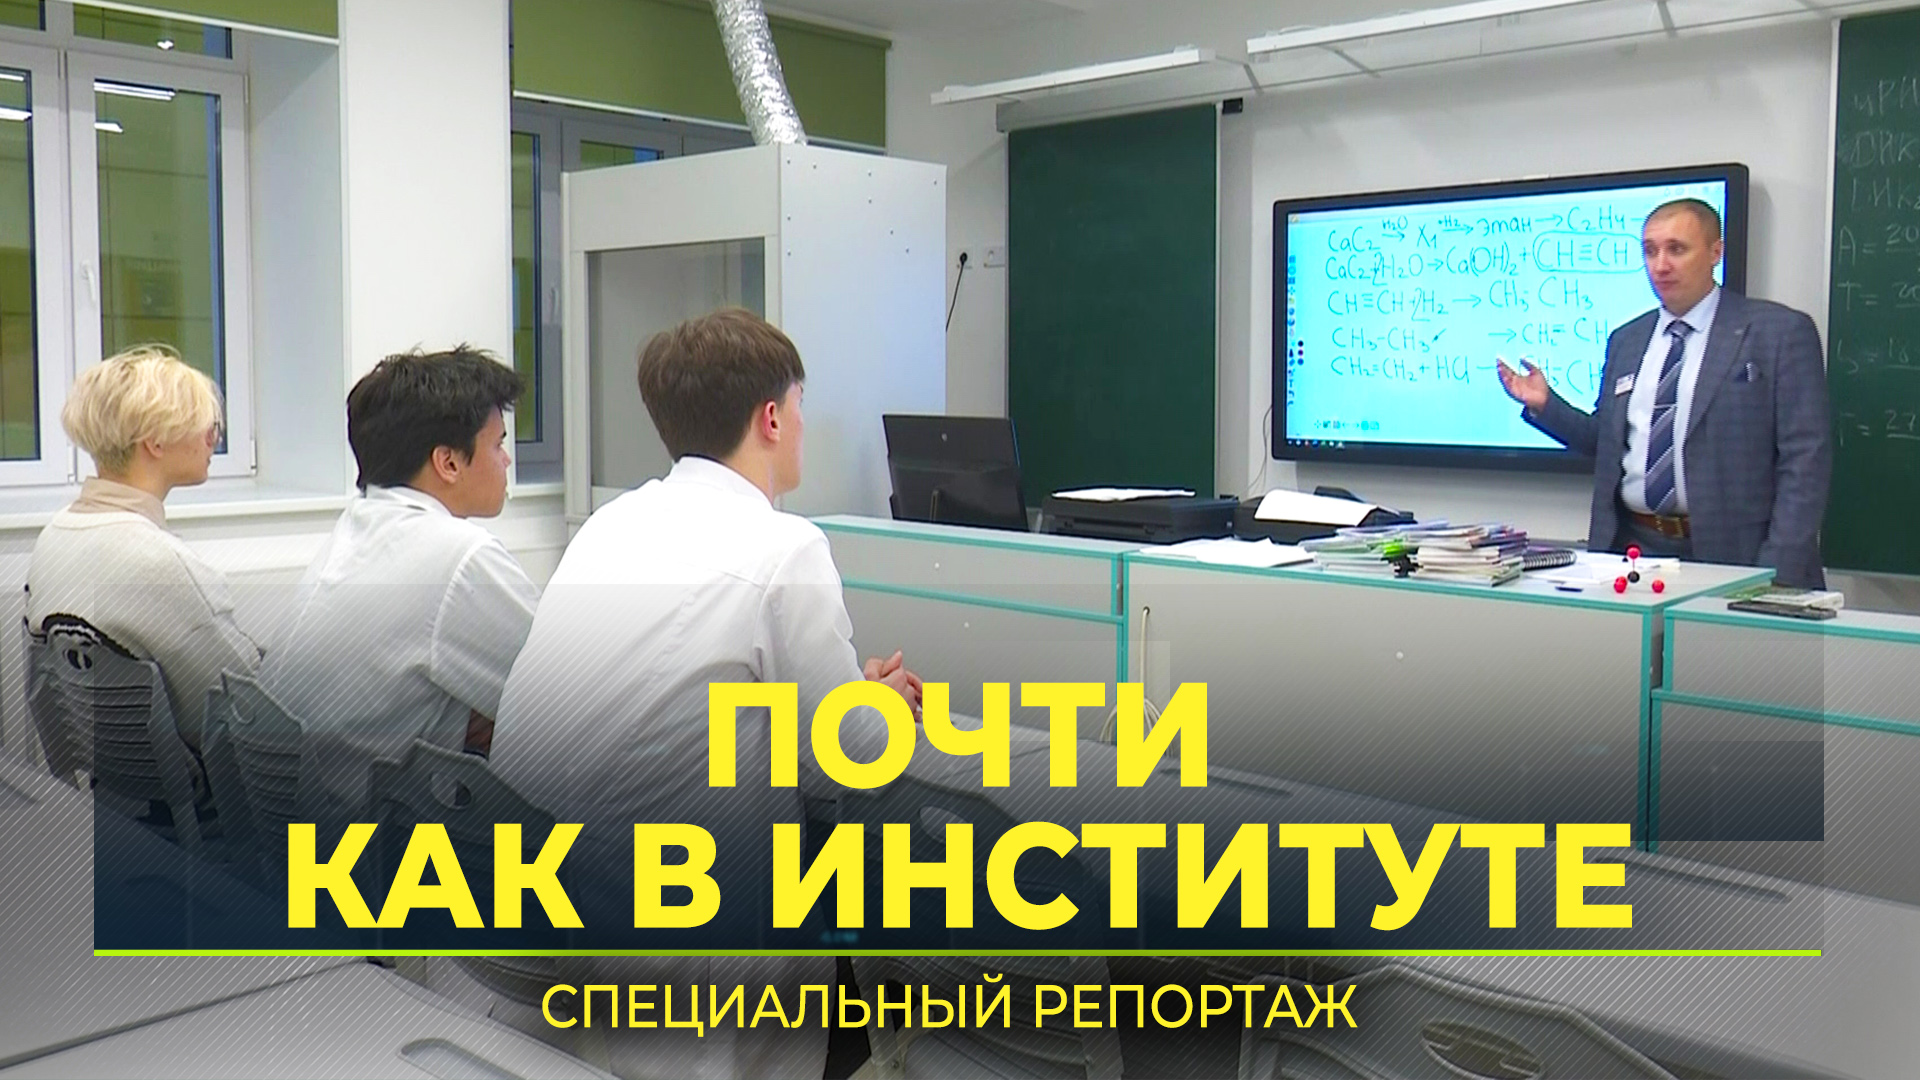 На Ямале подводят первые итоги перехода к новой системе образования